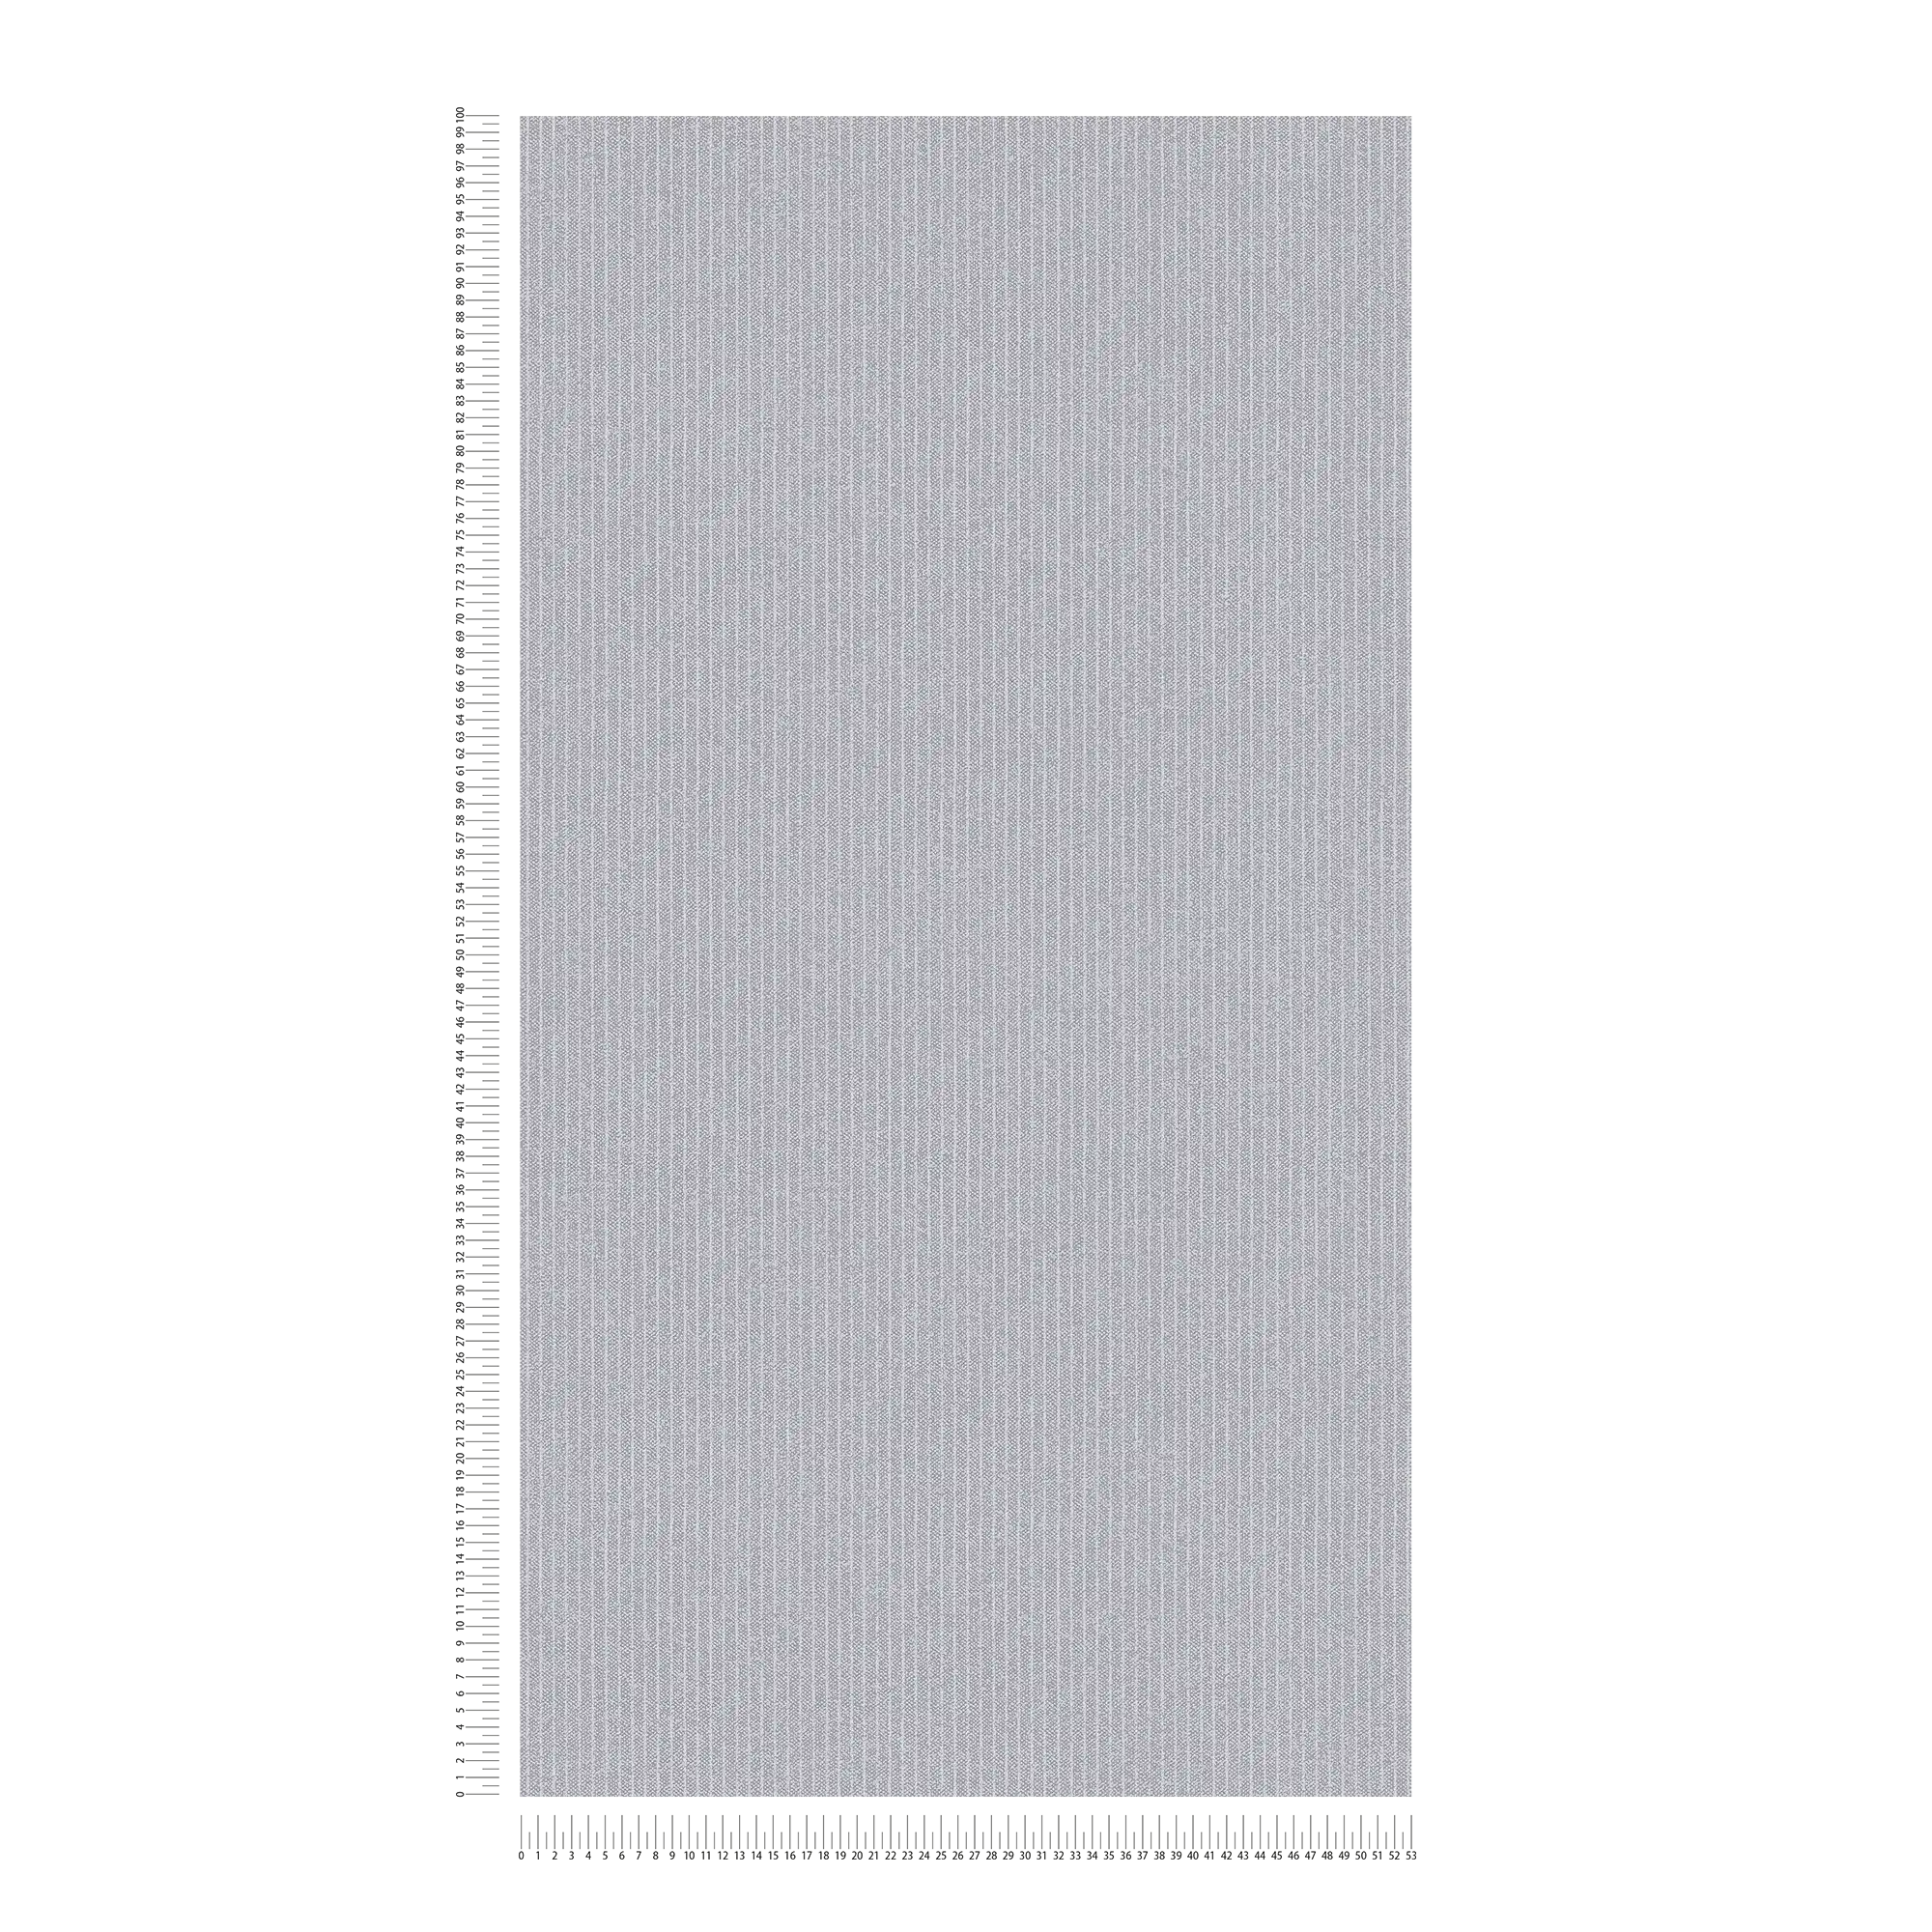             Gevoerd behangpapier smalle strepen in textiellook - grijs
        